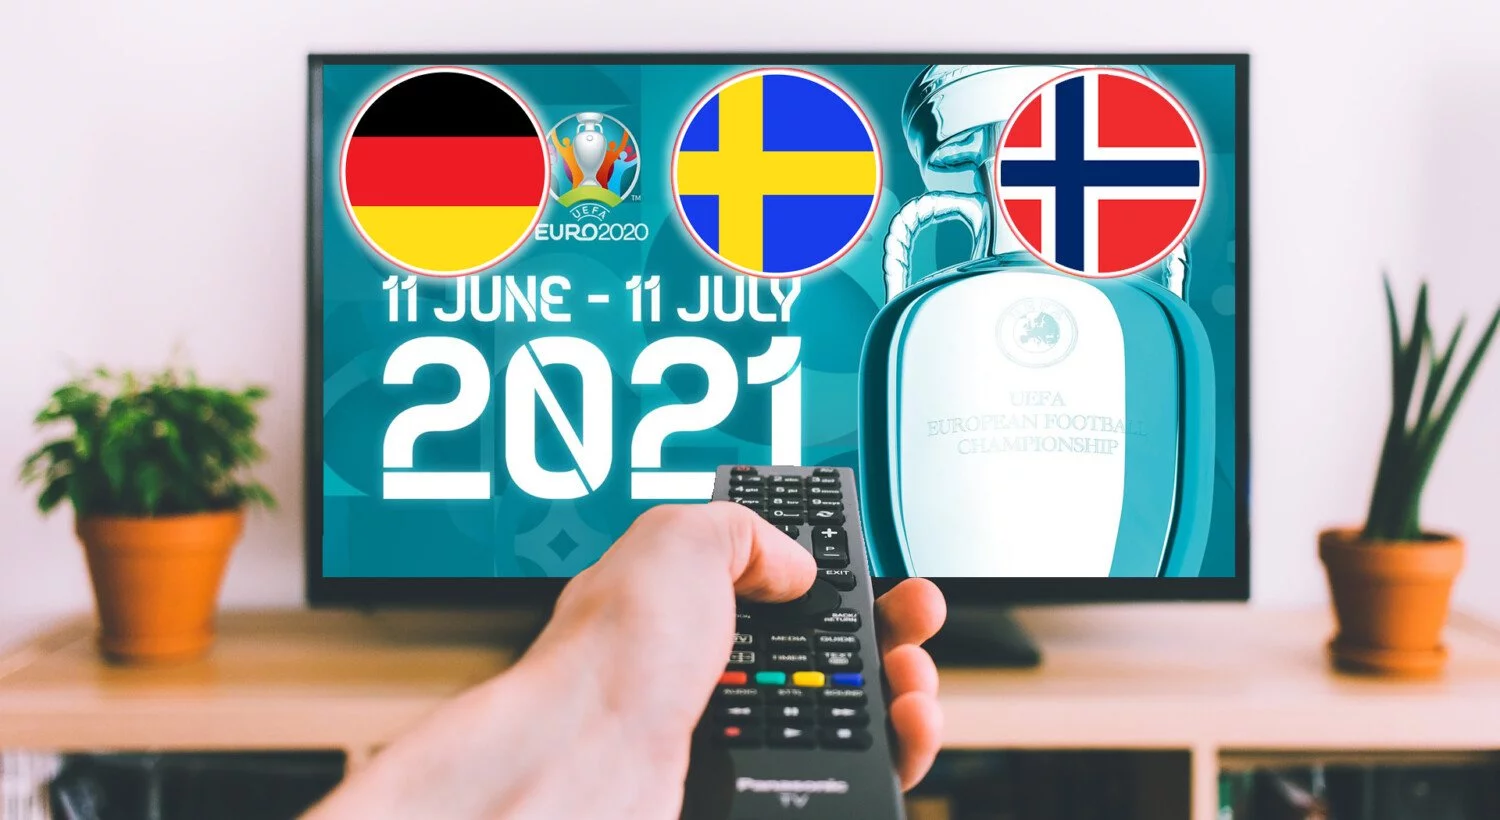 EM 2021 TV Nabolandskanaler